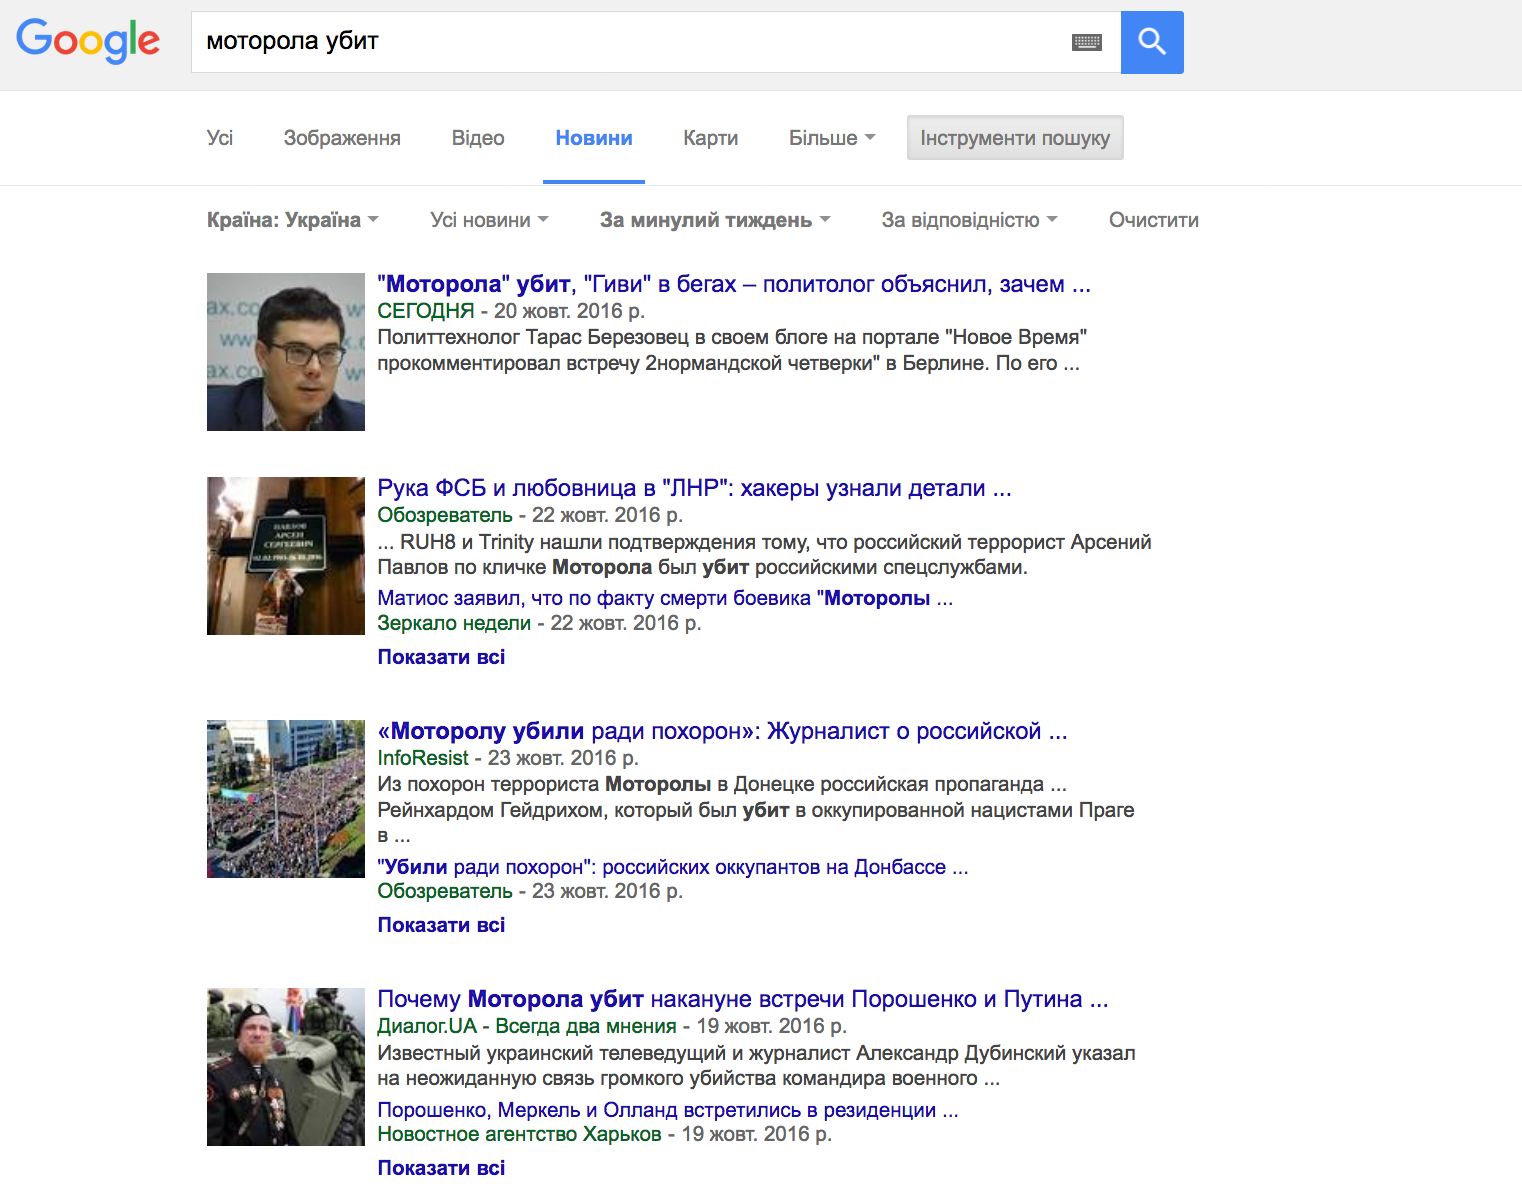 Búsqueda en Google Noticias por "Motorola fue matado"